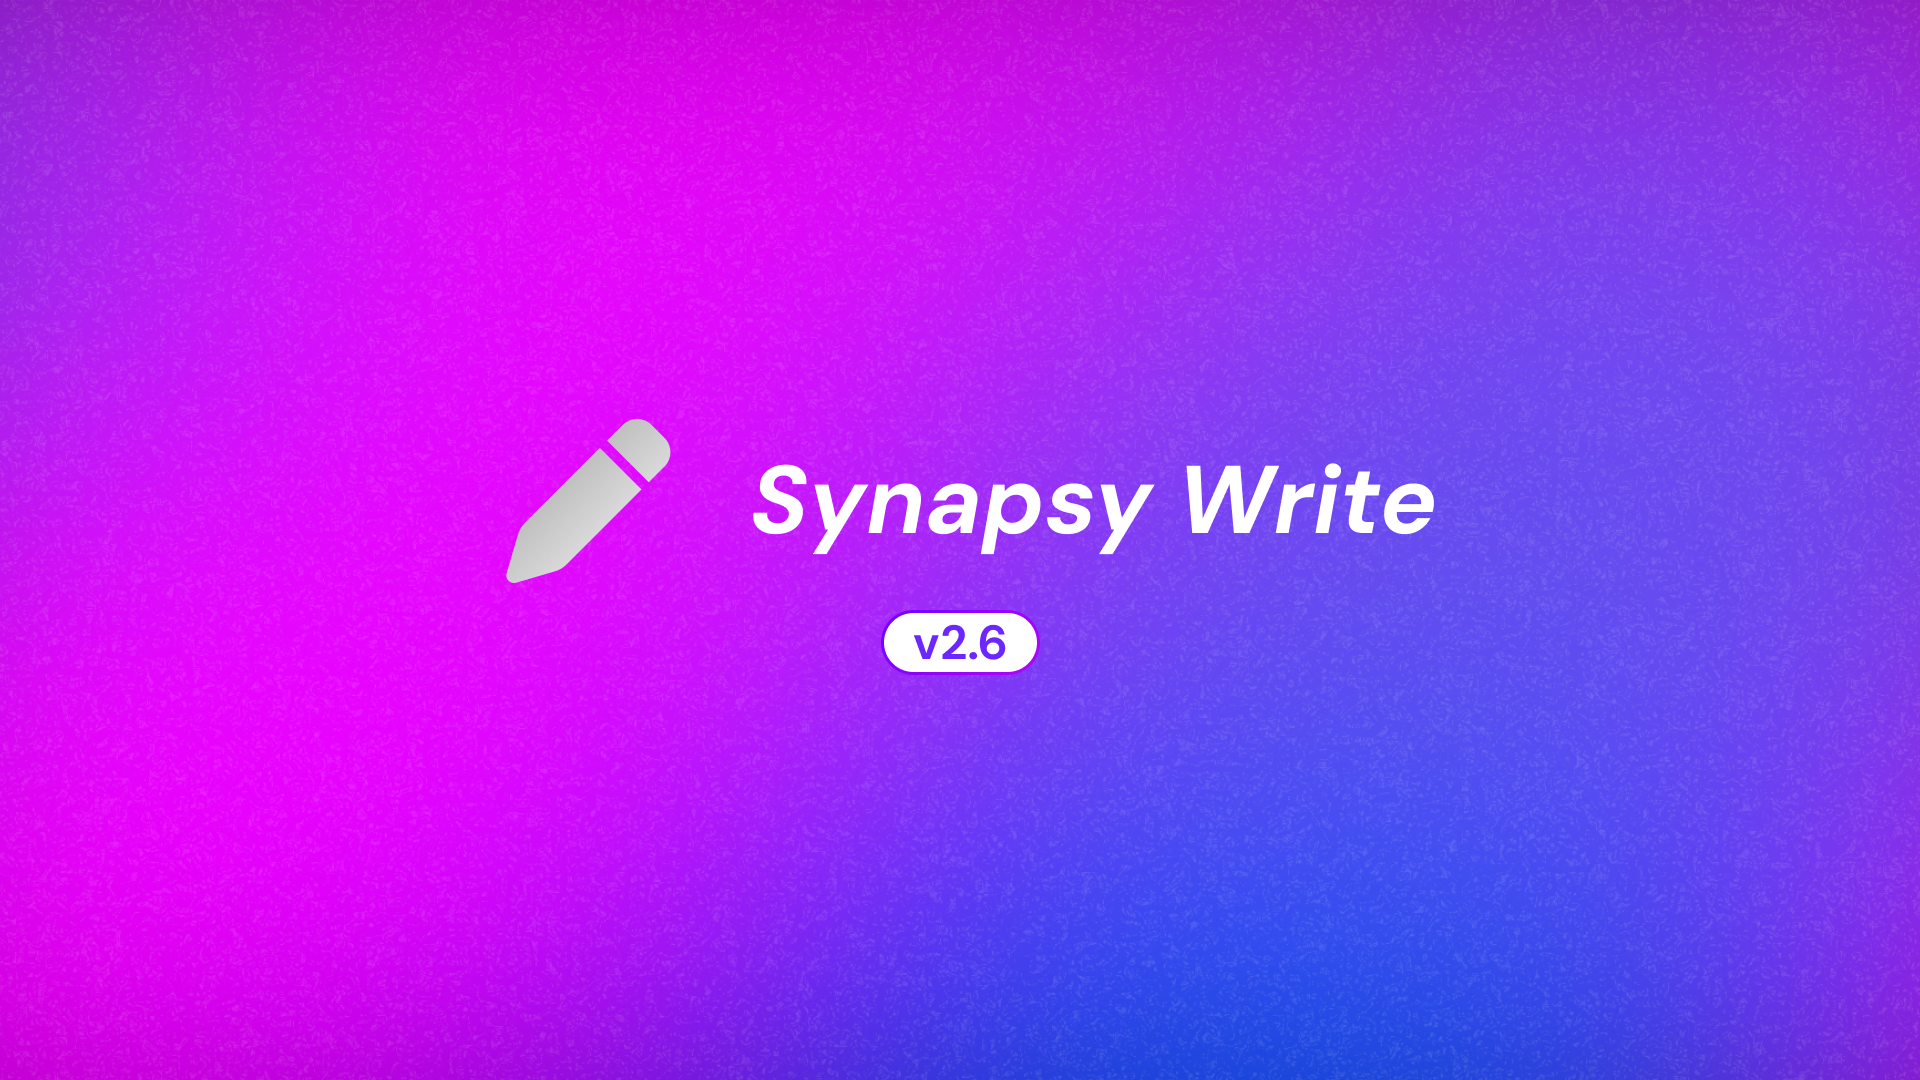 Synapsy Write v2.6.0 Changelog